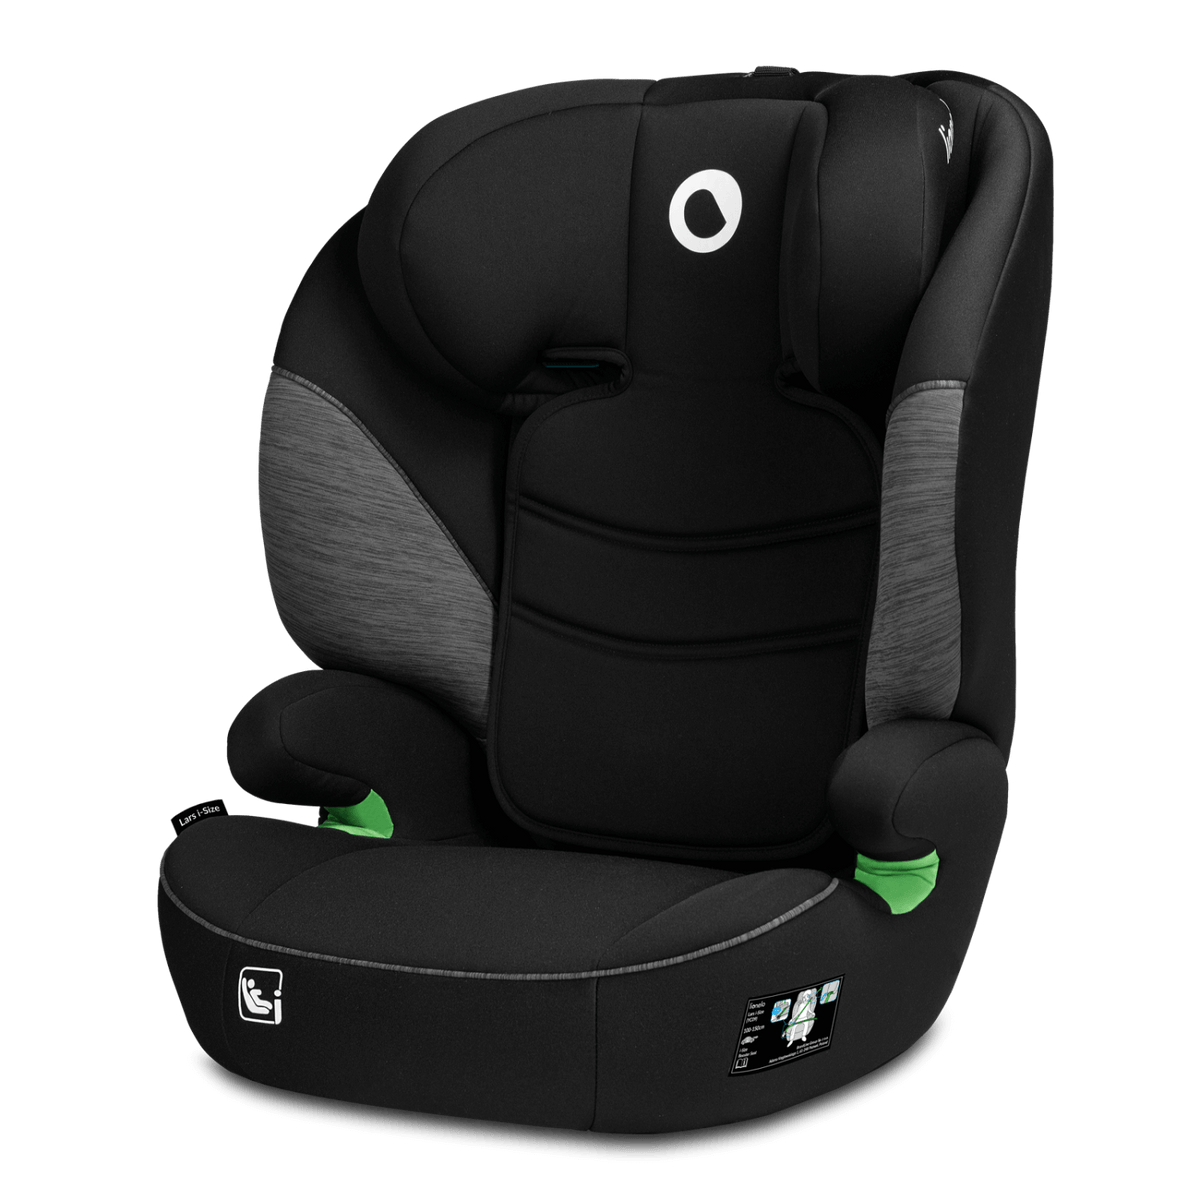 Siège-auto bébé LARS i-size Lionelo - Baby & Toddler Car Seat Accessories par Lionelo